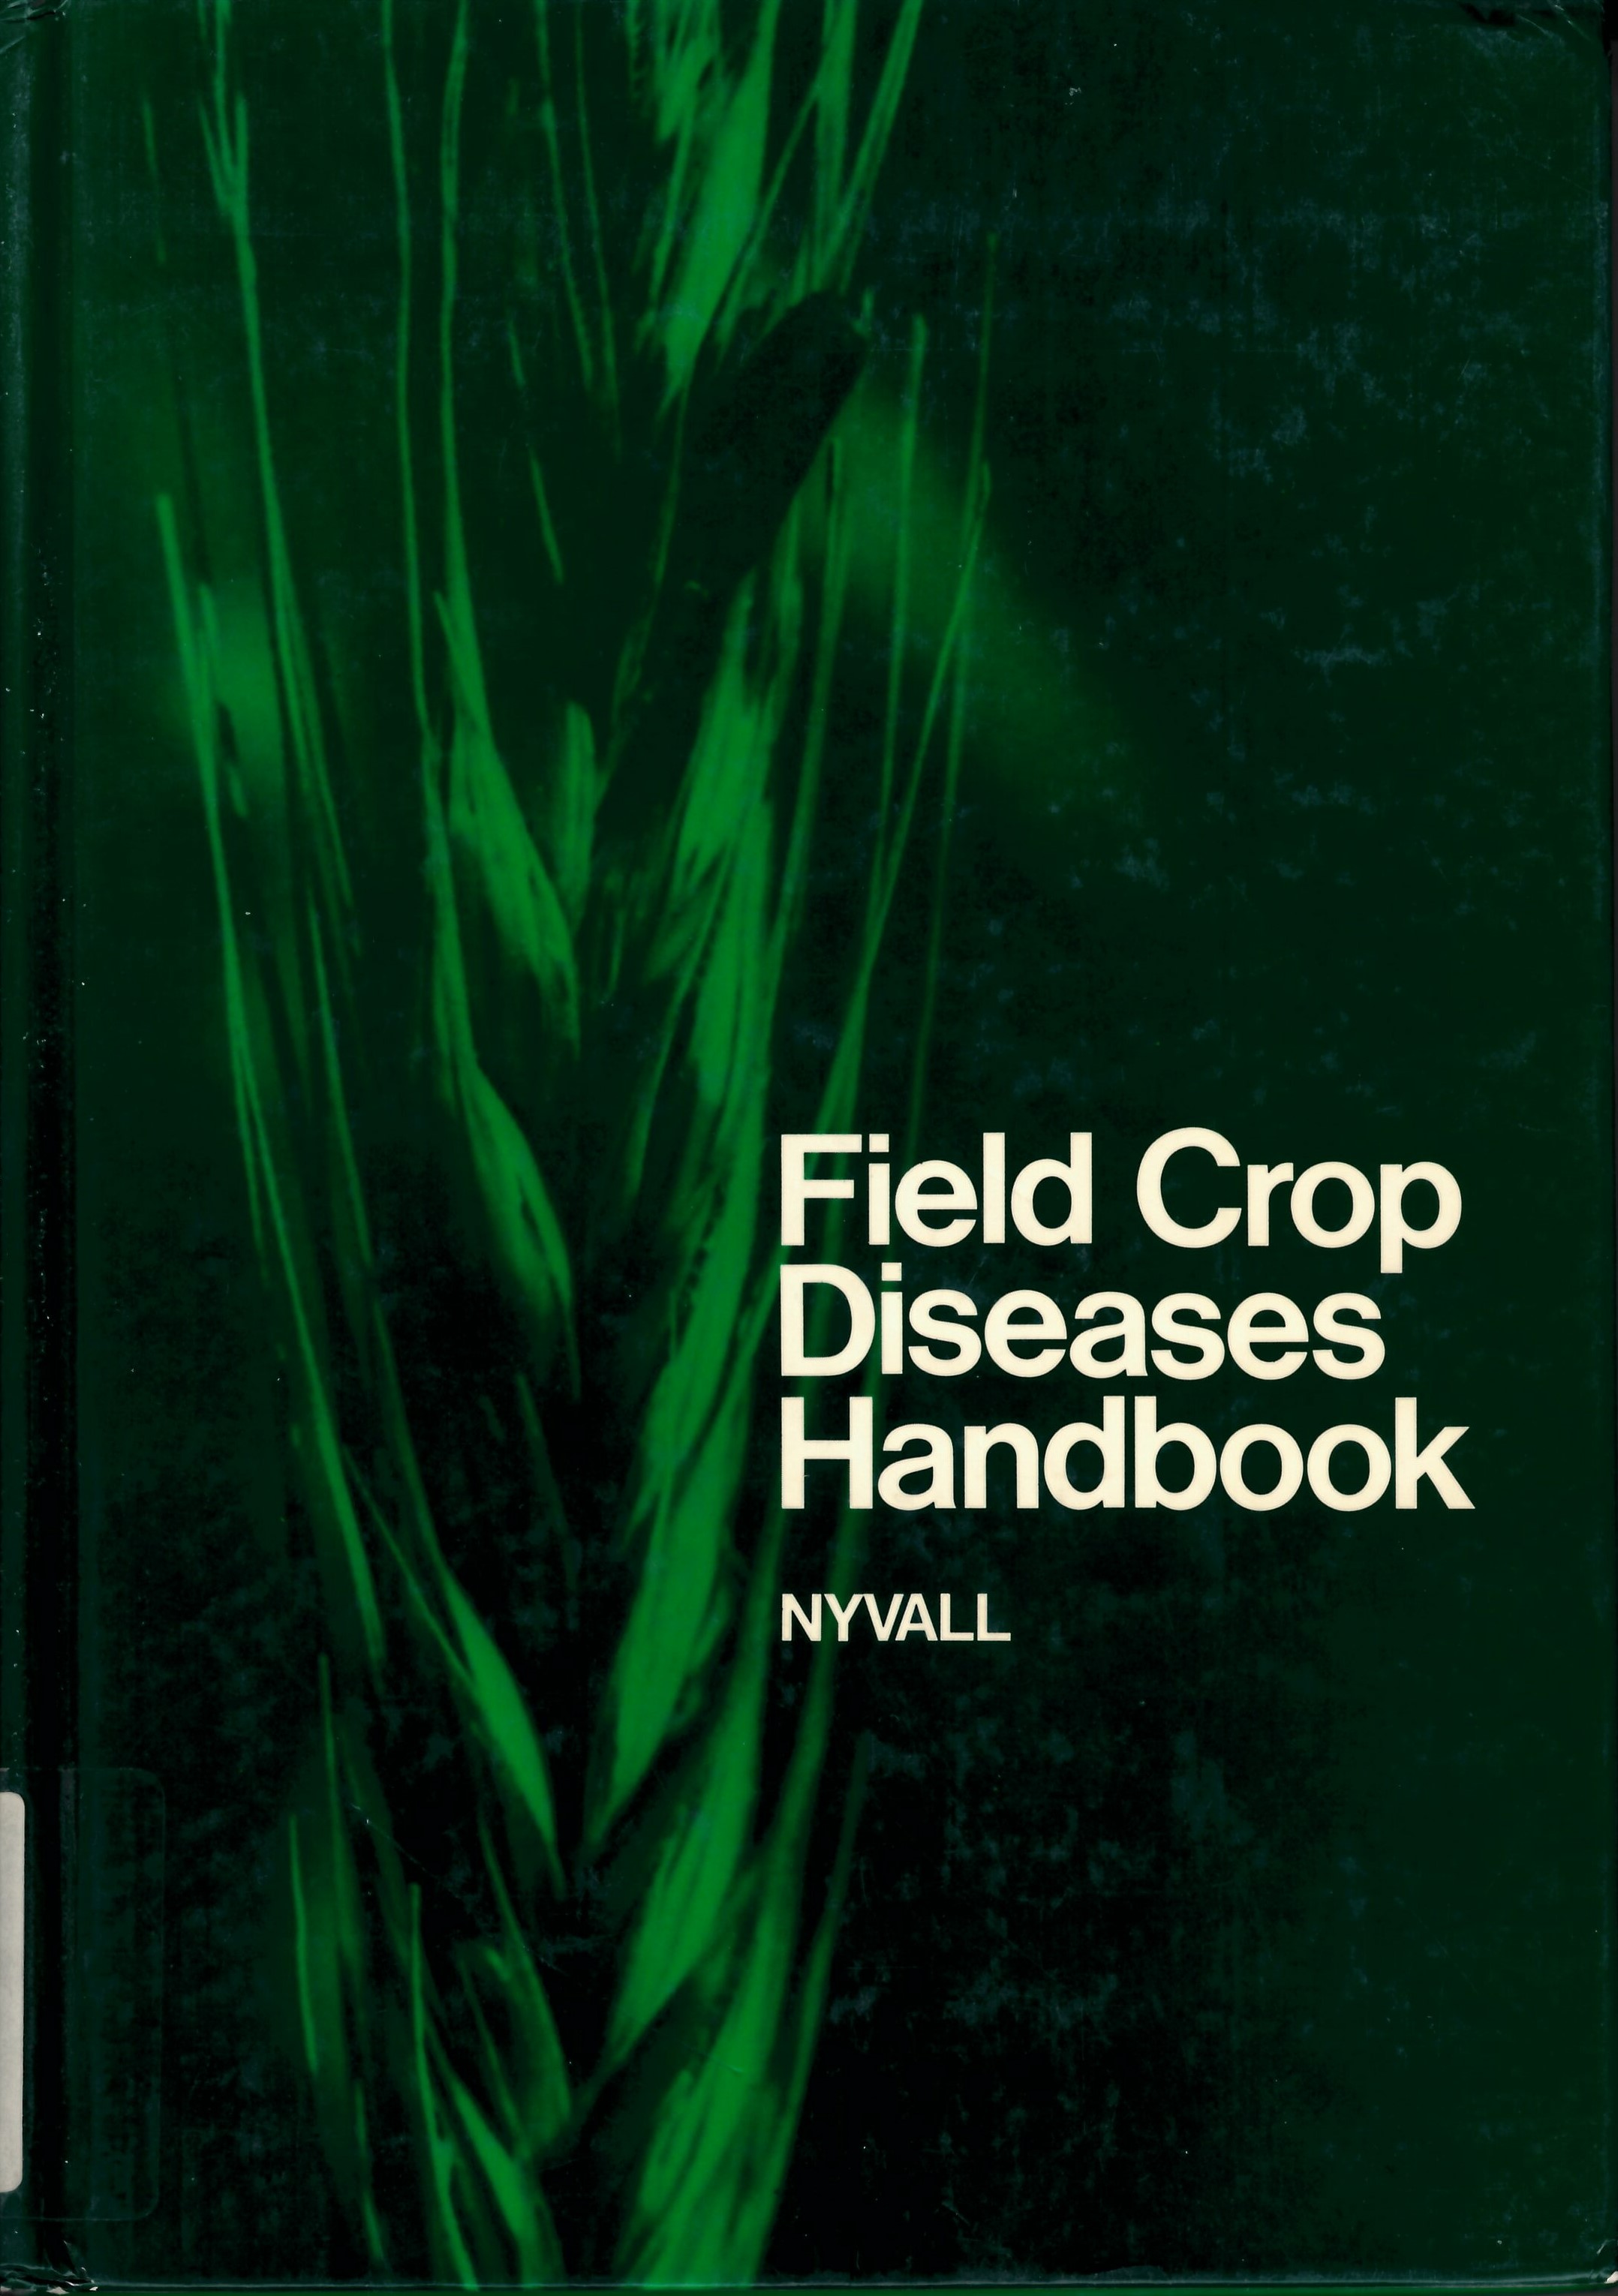 Field crop diseases handbook